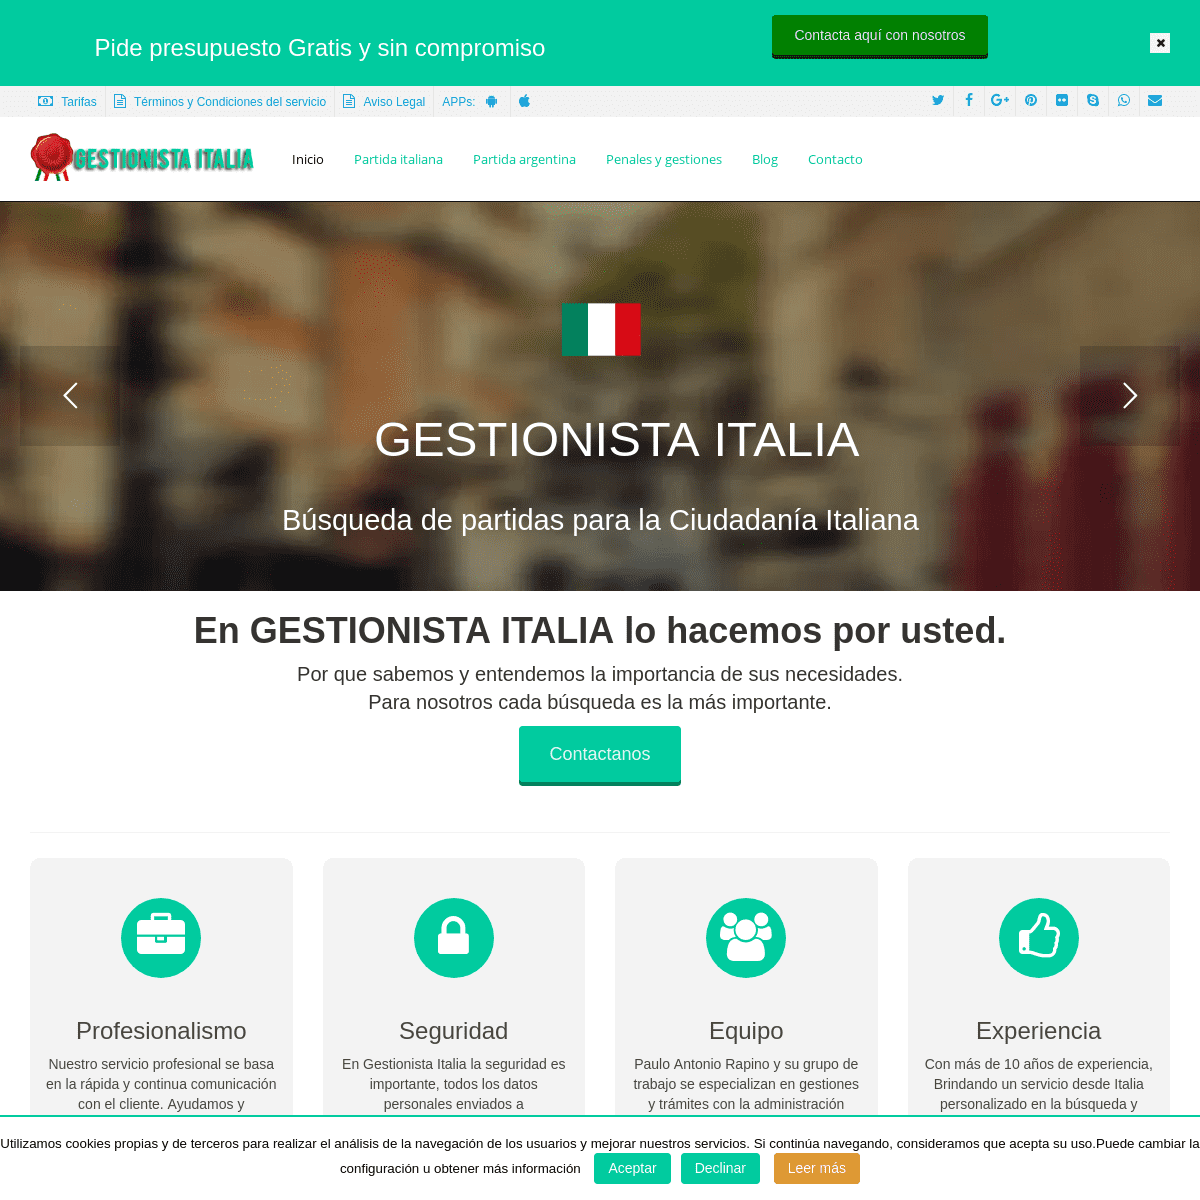 Partidas de nacimiento Italianas Gestionalista Italia